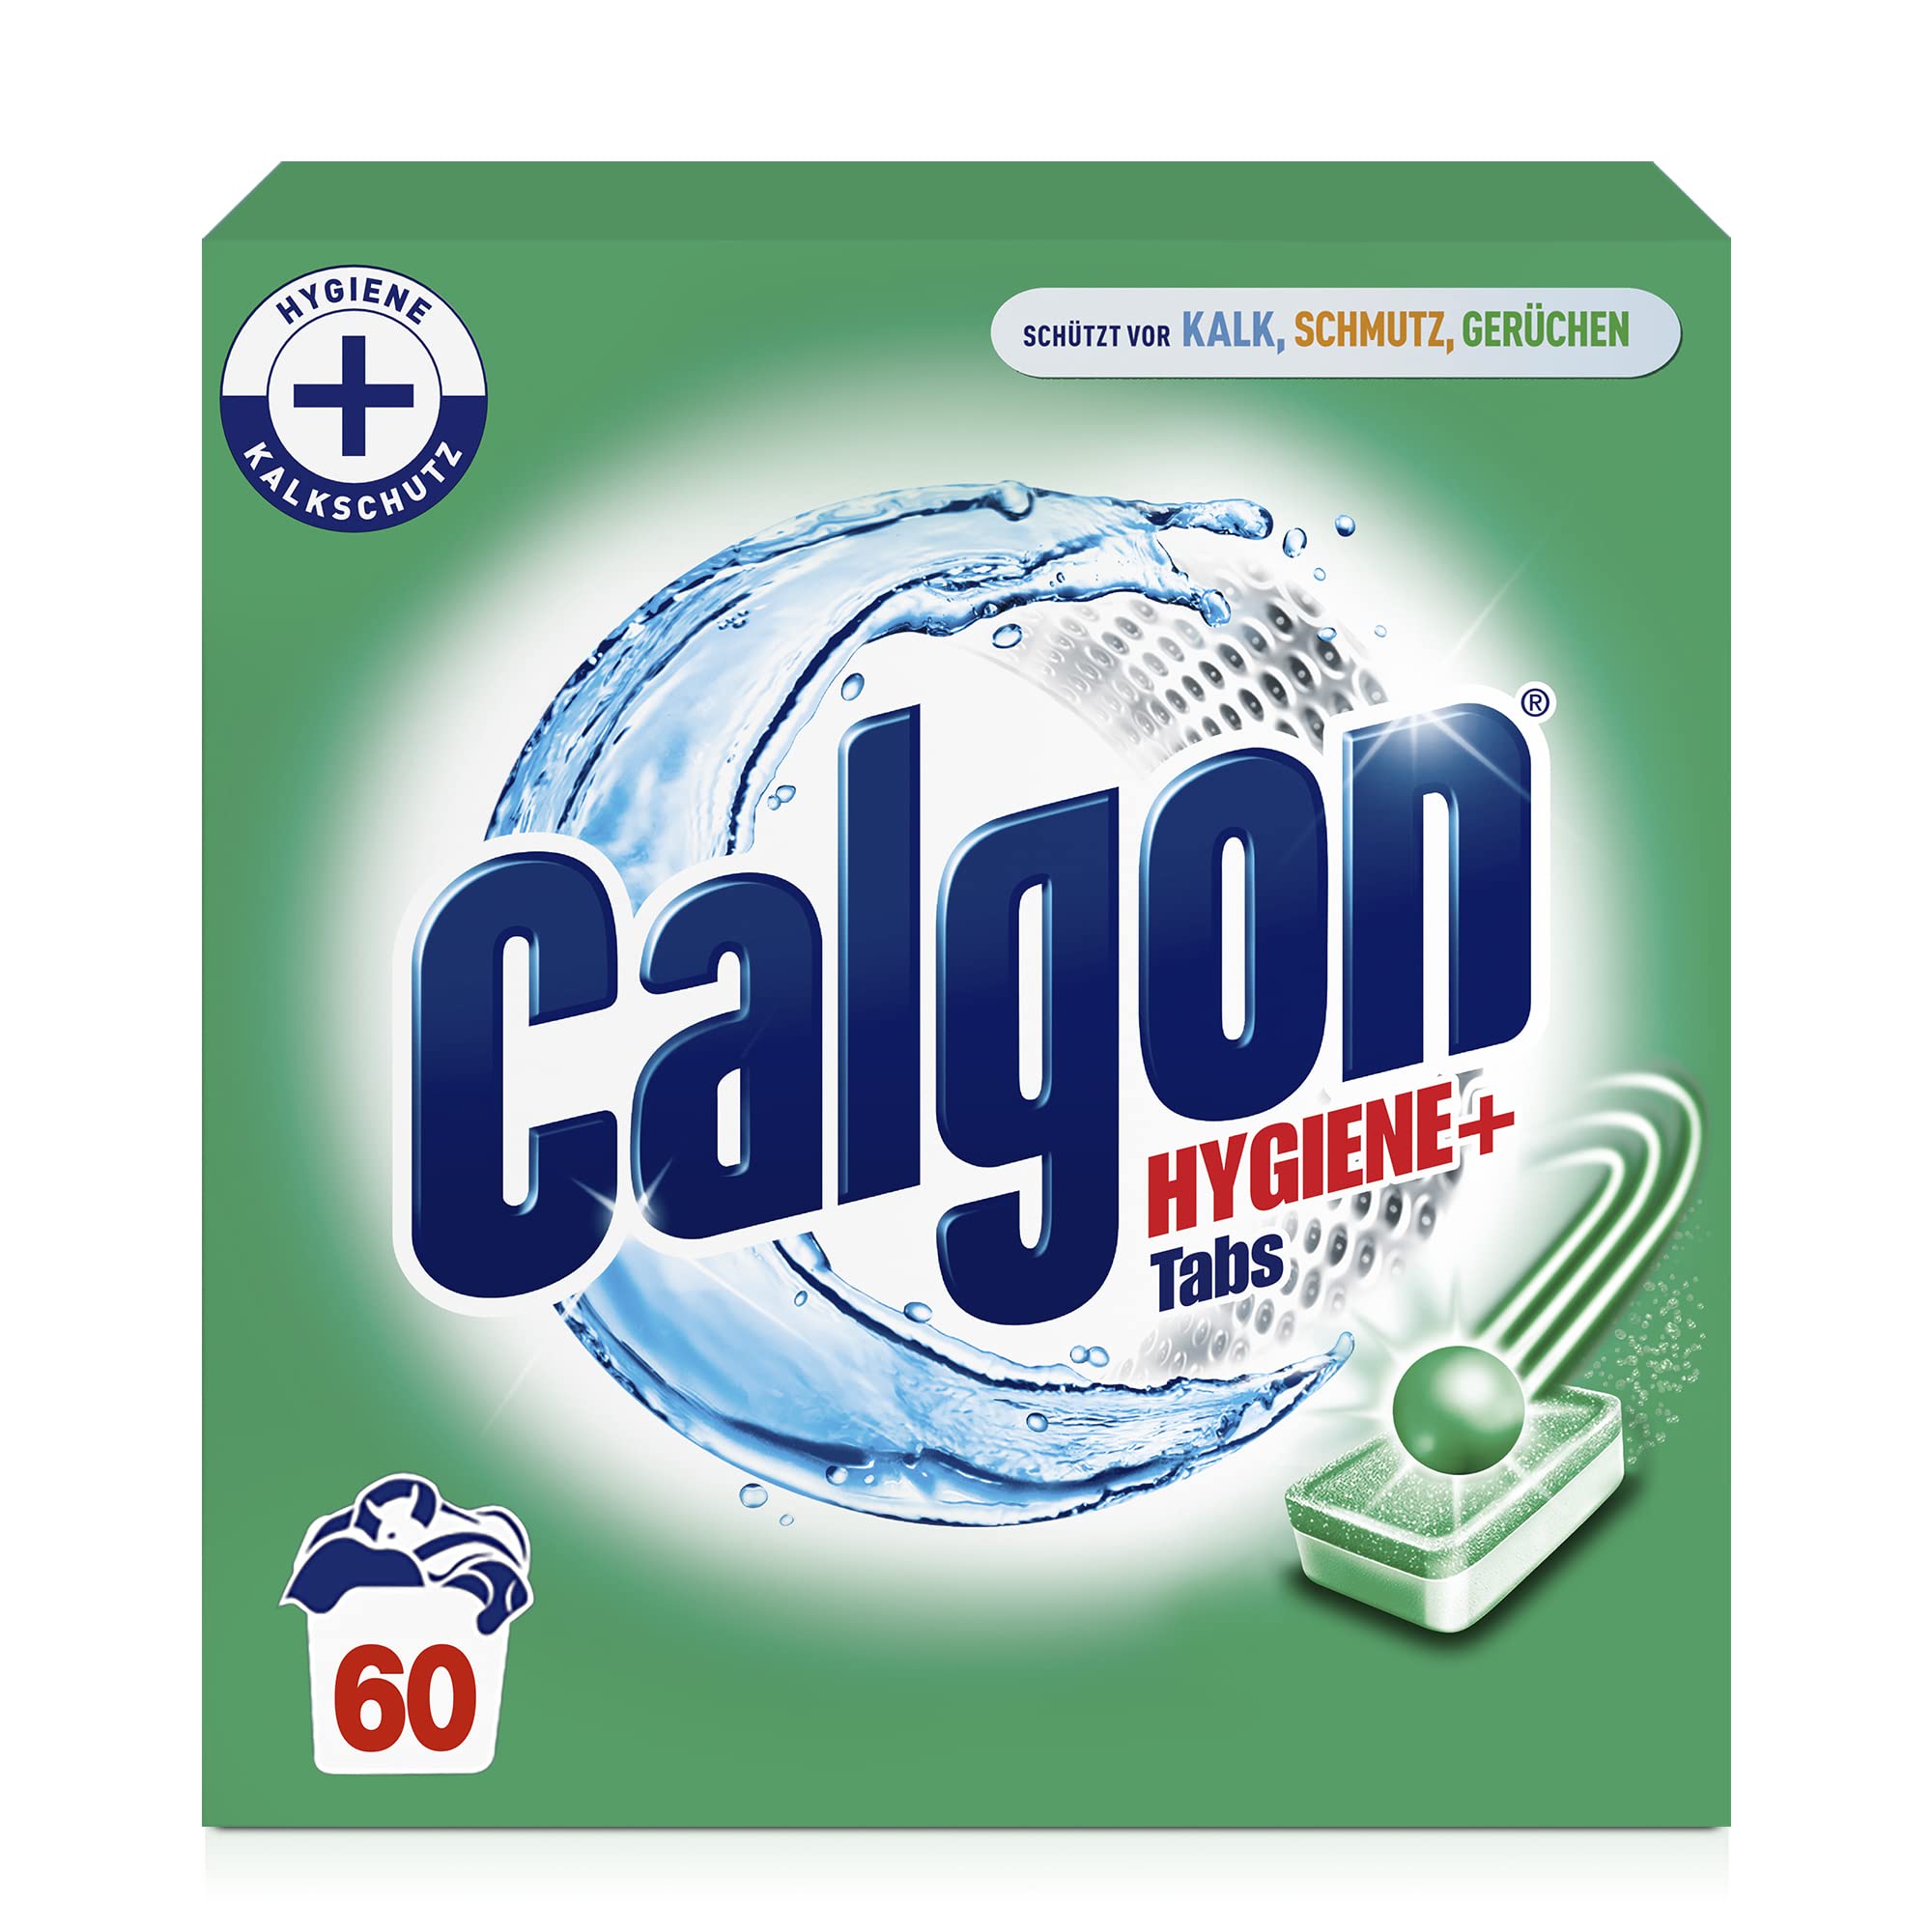 Calgon Hygiene+ Tabs – Schutz vor Kalkablagerungen und Schmutz – Wasserenthärter mit Hygieneschutz für die Waschmaschine – 1 x 60 Tabs